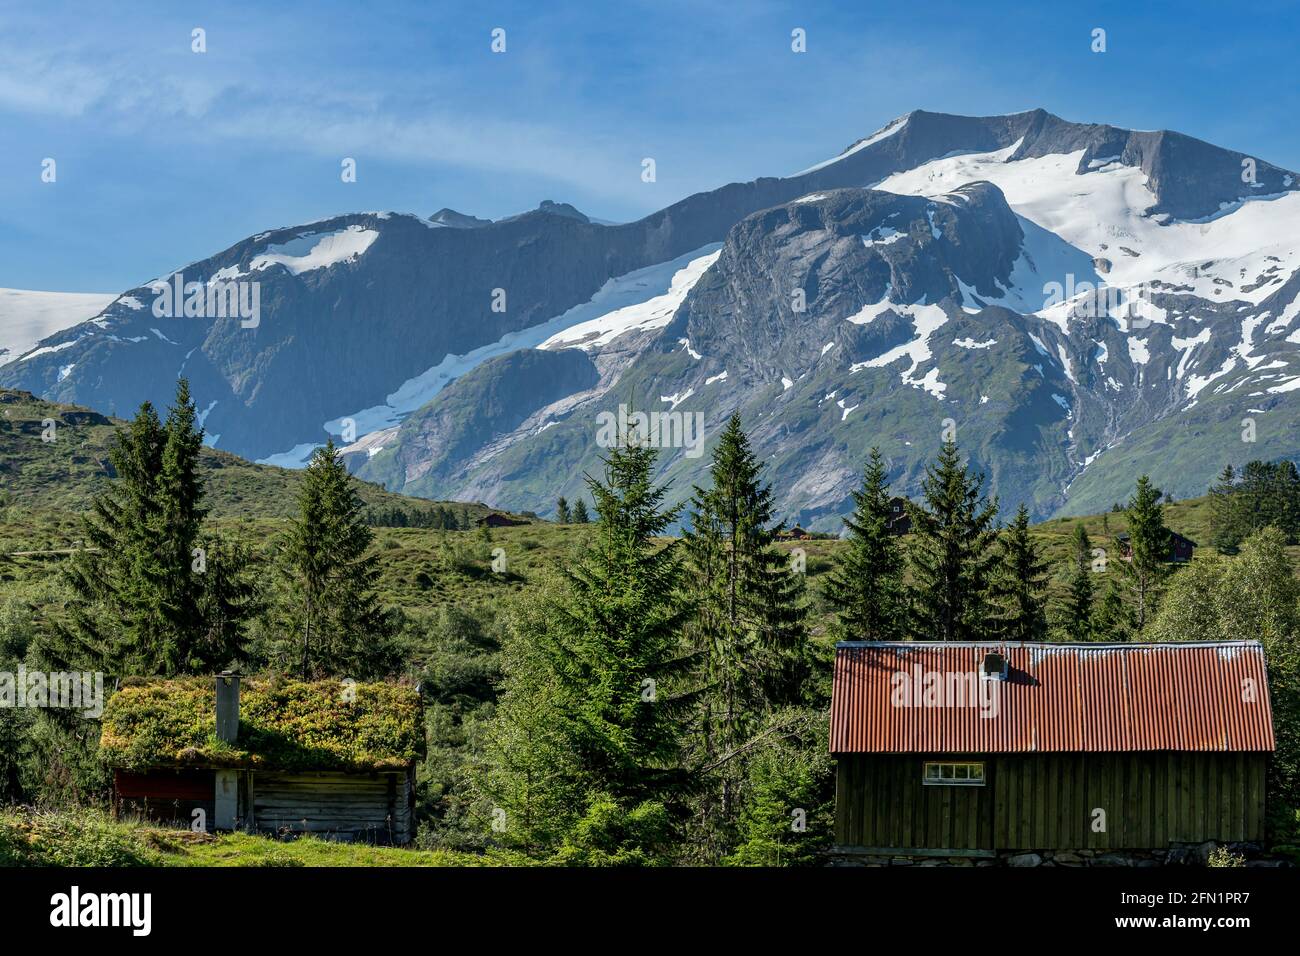 FLO, NORVÈGE - 2020 AOÛT 10. Cottage norvégien dans la nature sauvage avec de grandes montagnes. Banque D'Images